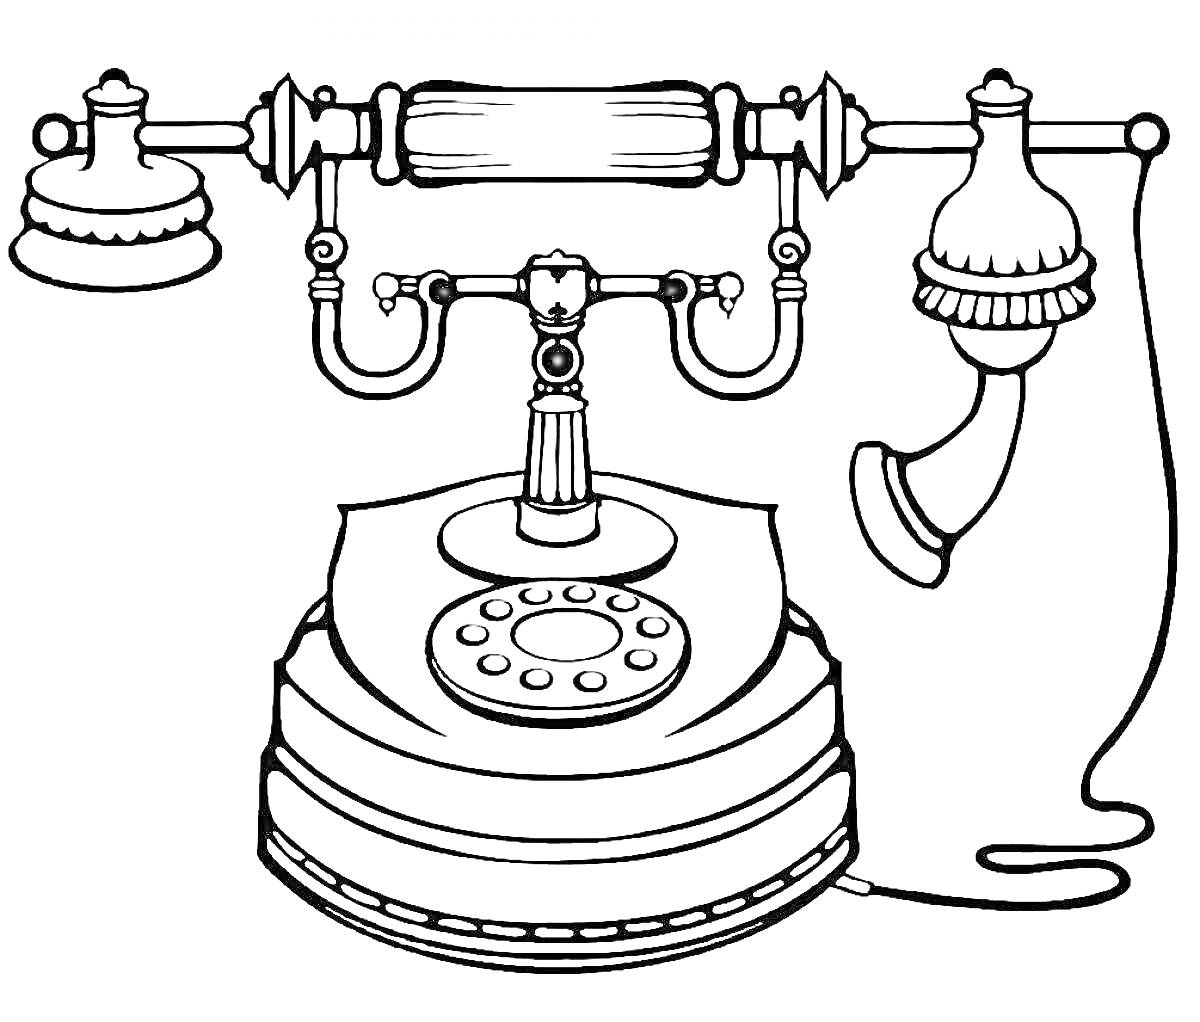 Винтажный телефон - корпус, трубка, дисковый номеронабиратель, провод